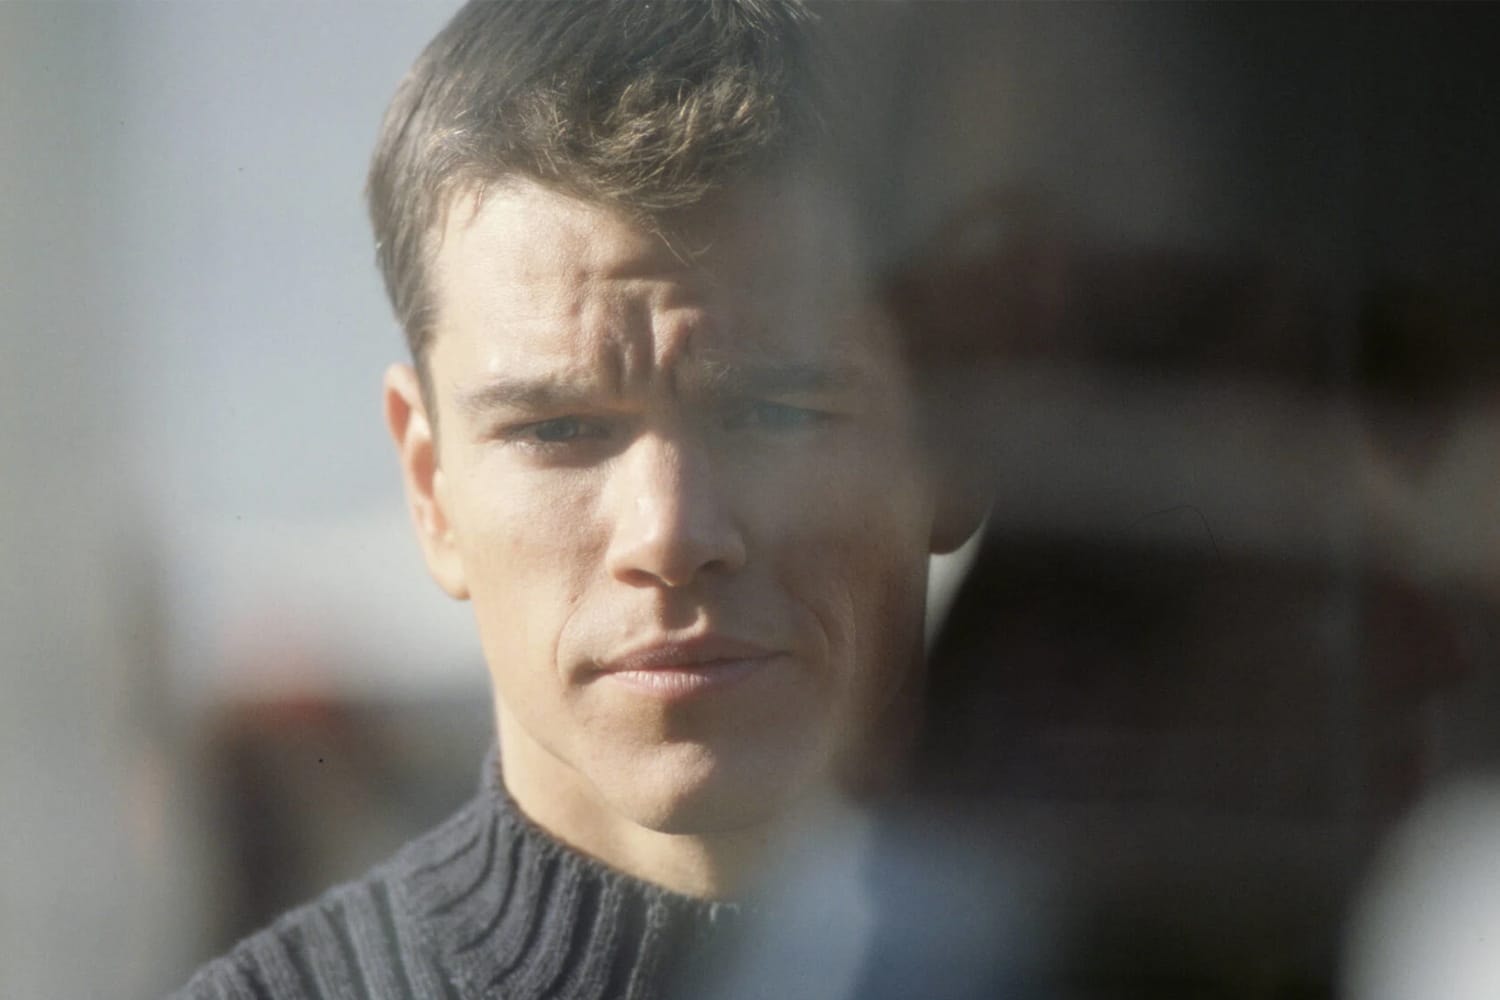 消息称 Matt Damon 主演动作电影《谍影重重 / The Bourne Identity》有望推出全新续集